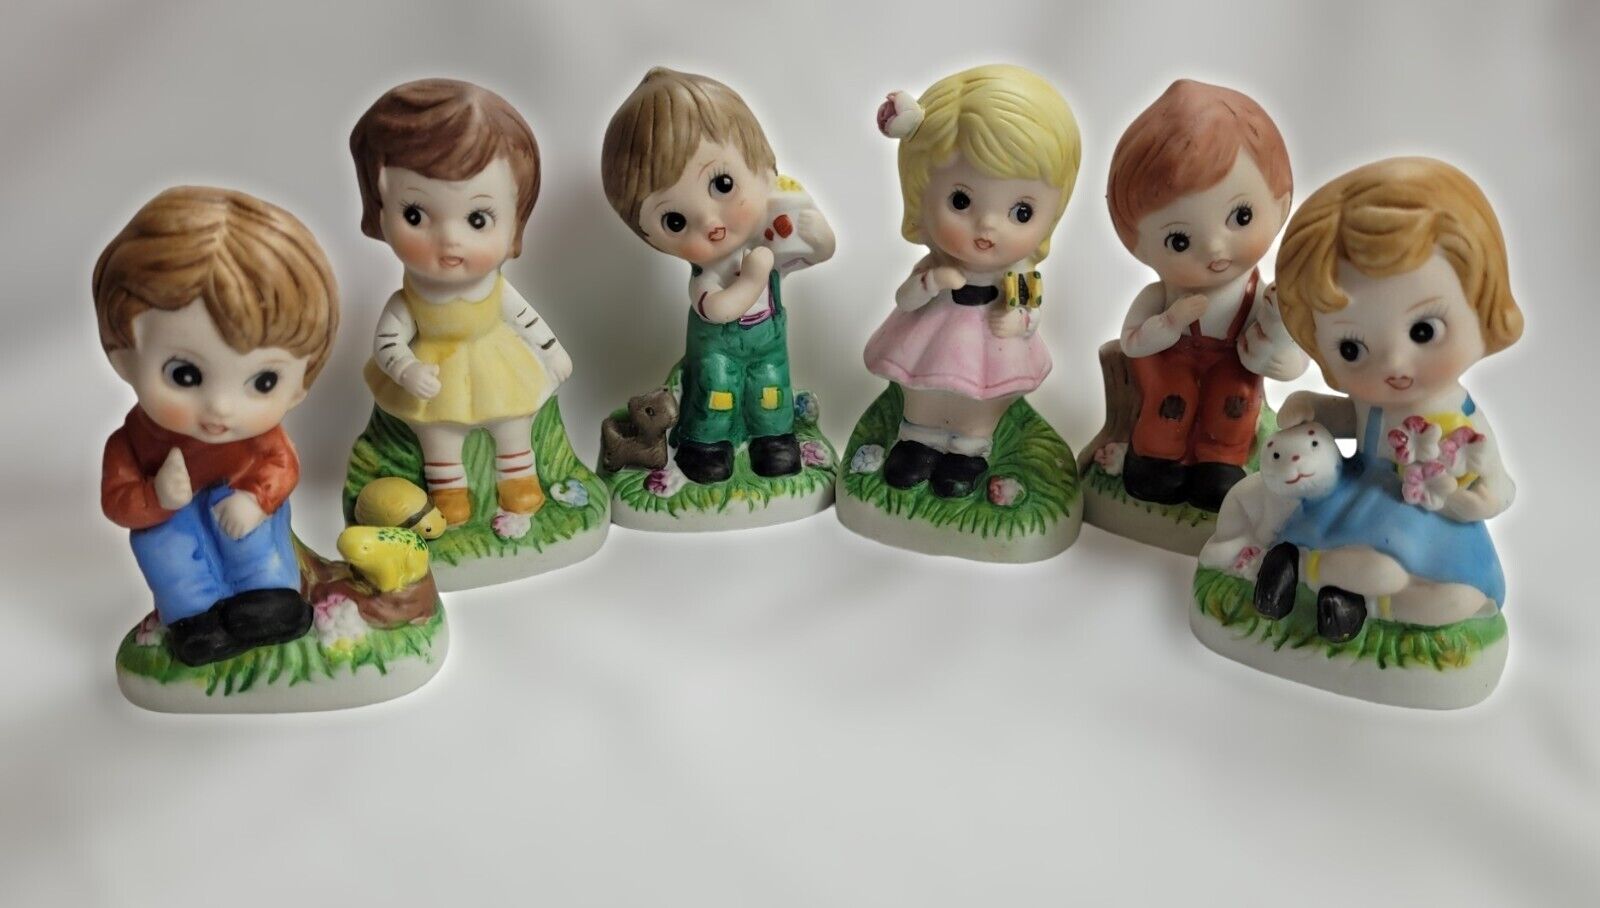 Set of 6 Vintage Big-Eyed Girls & Boys Figurines Bisque Porcelain Korea